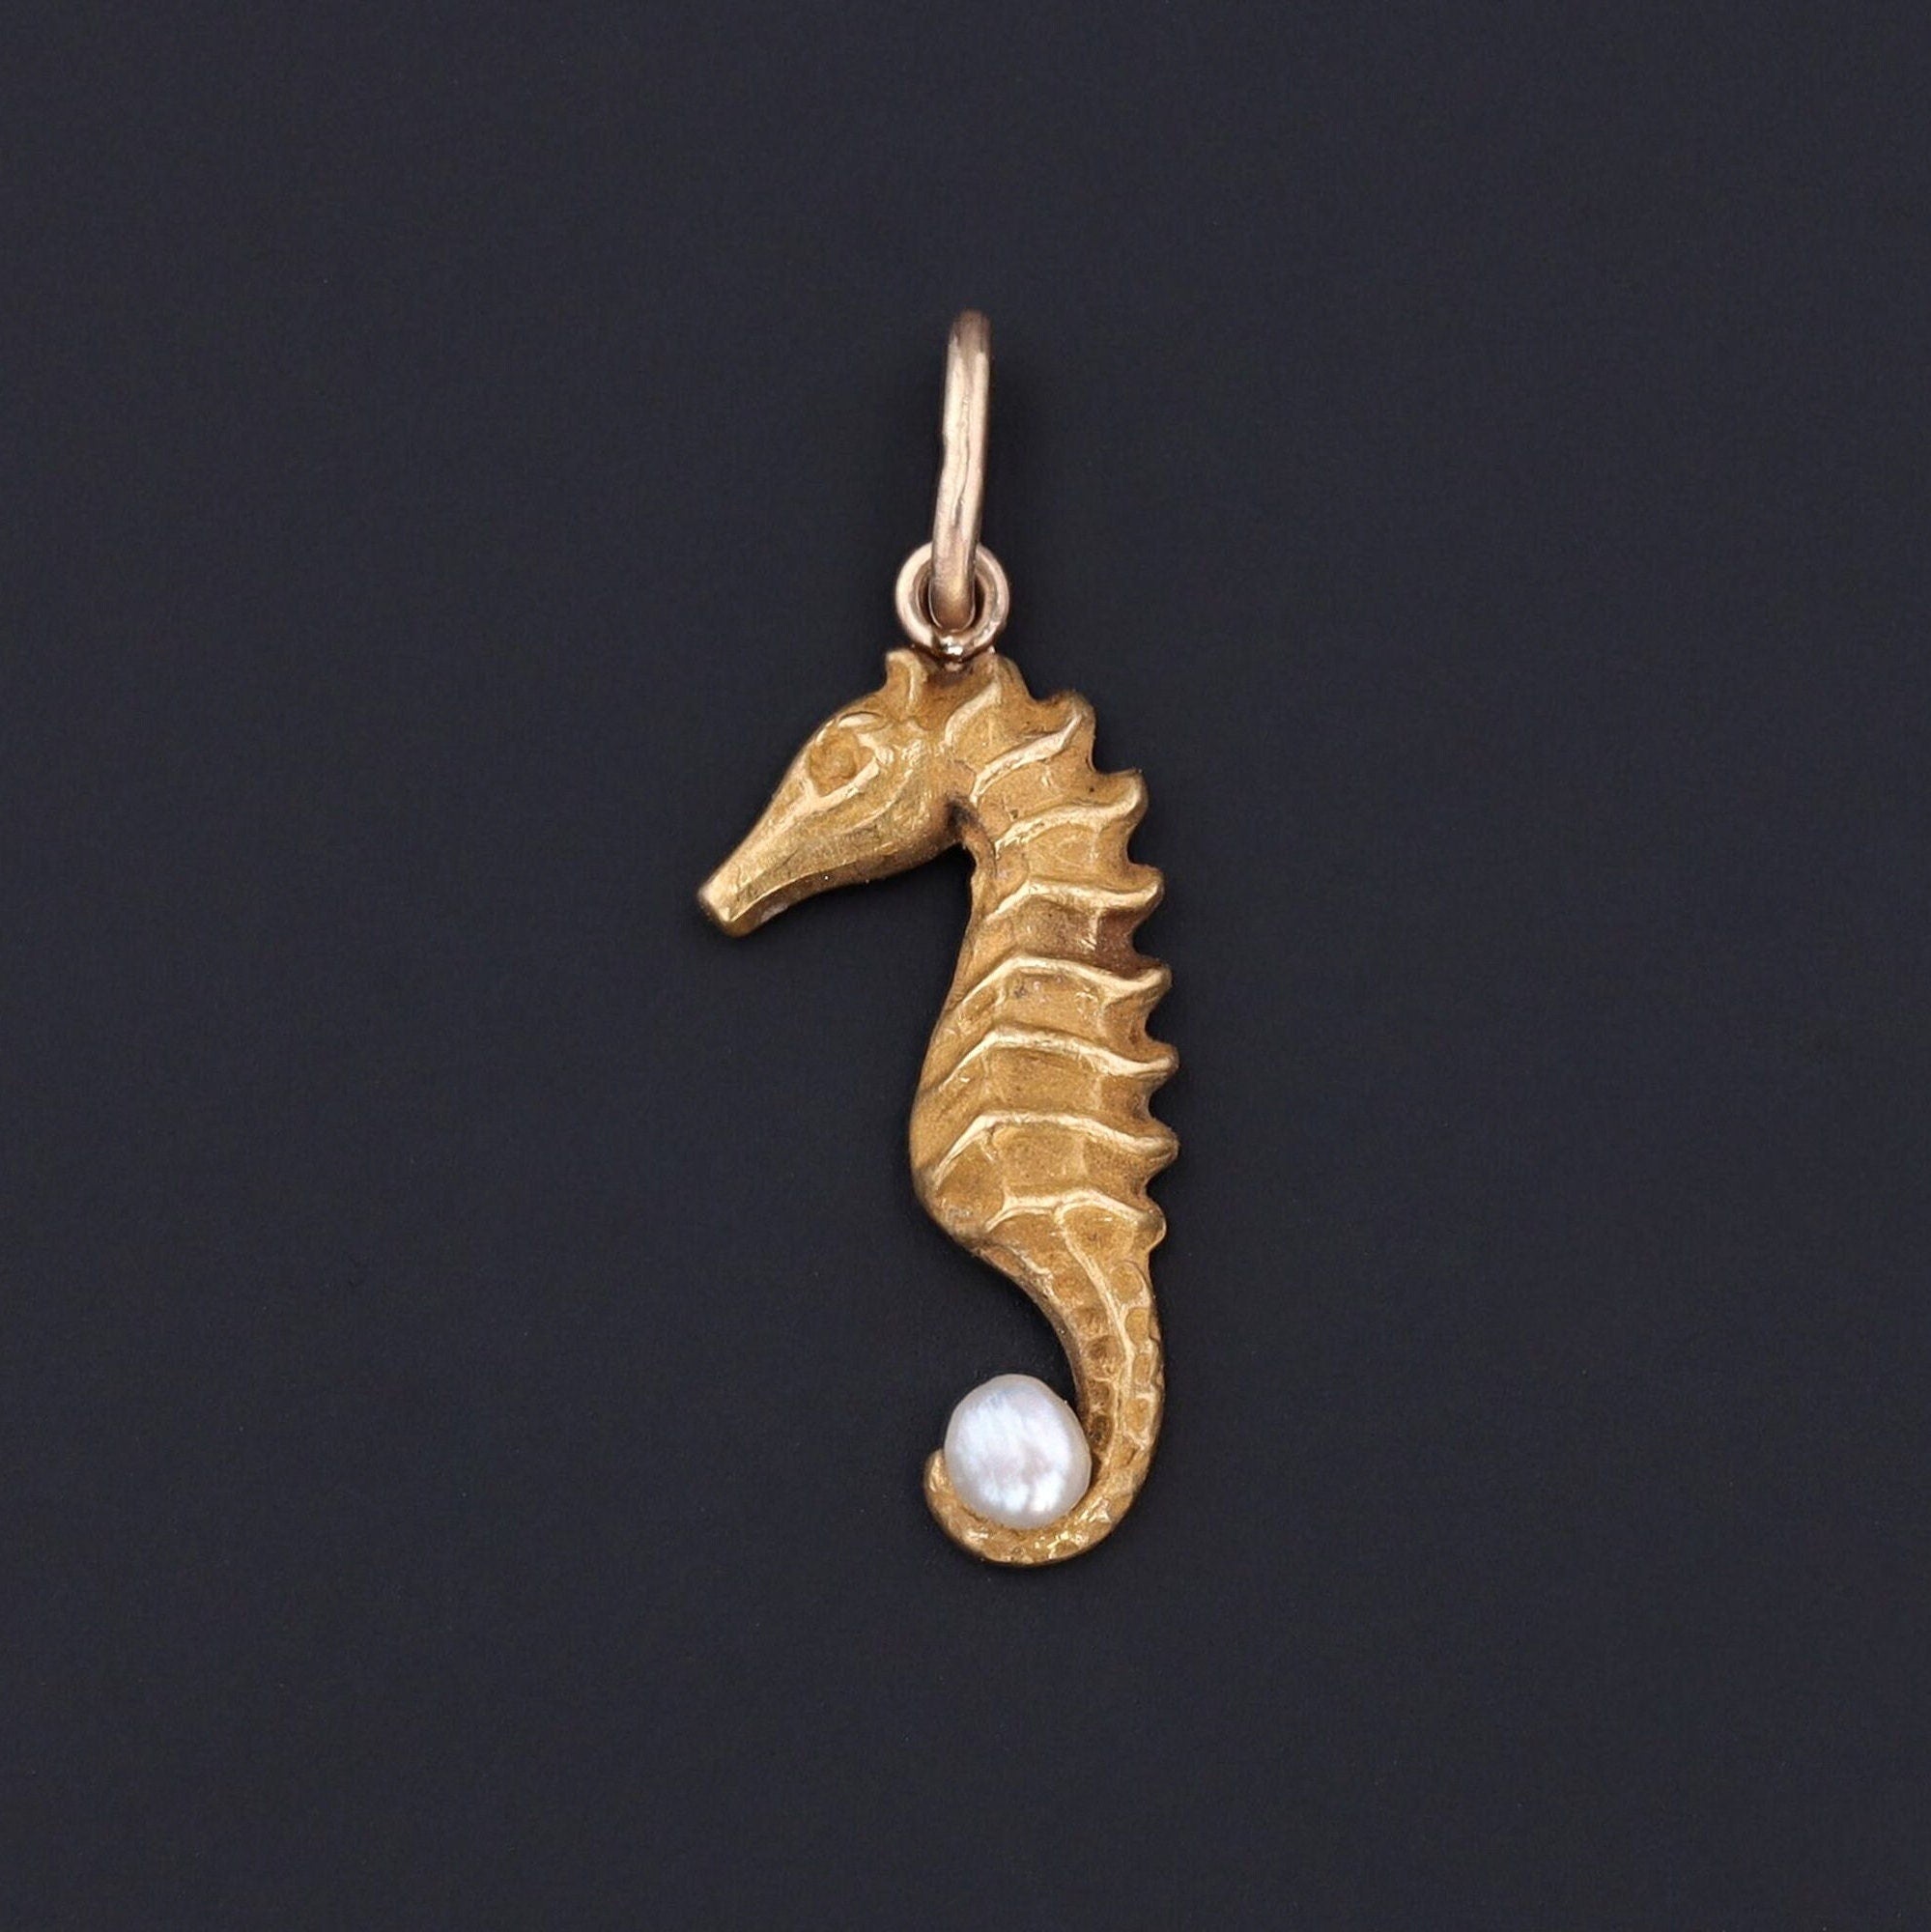 Seahorse Charm | Antique Seahorse Charm 